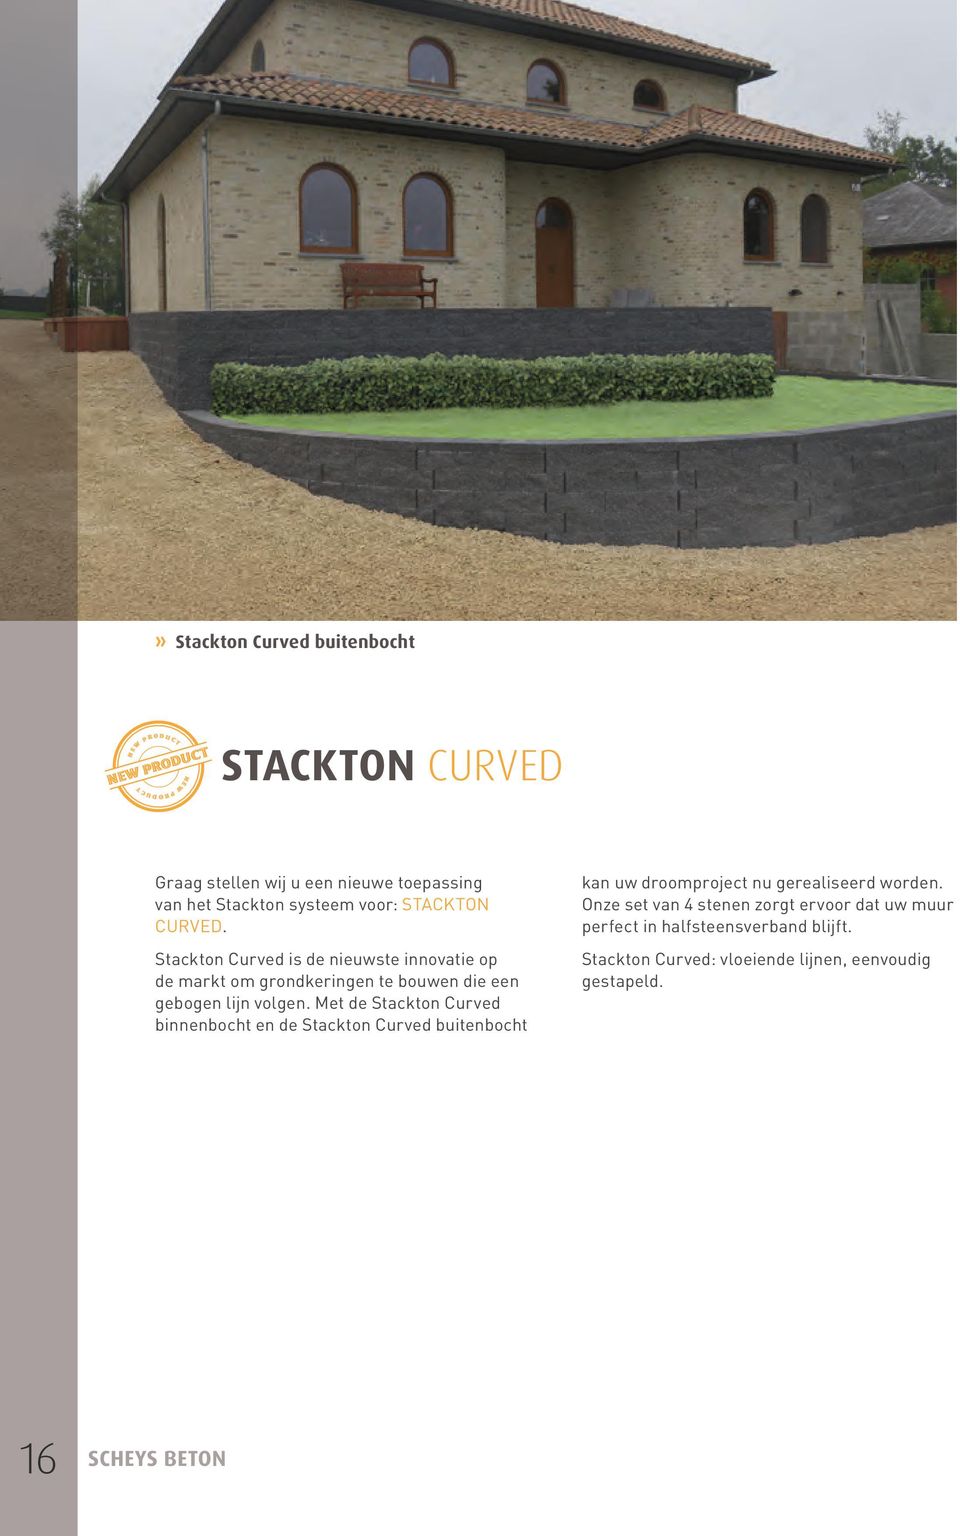 Stackton Curved is de nieuwste innovatie op de markt om grondkeringen te bouwen die een gebogen lijn volgen.